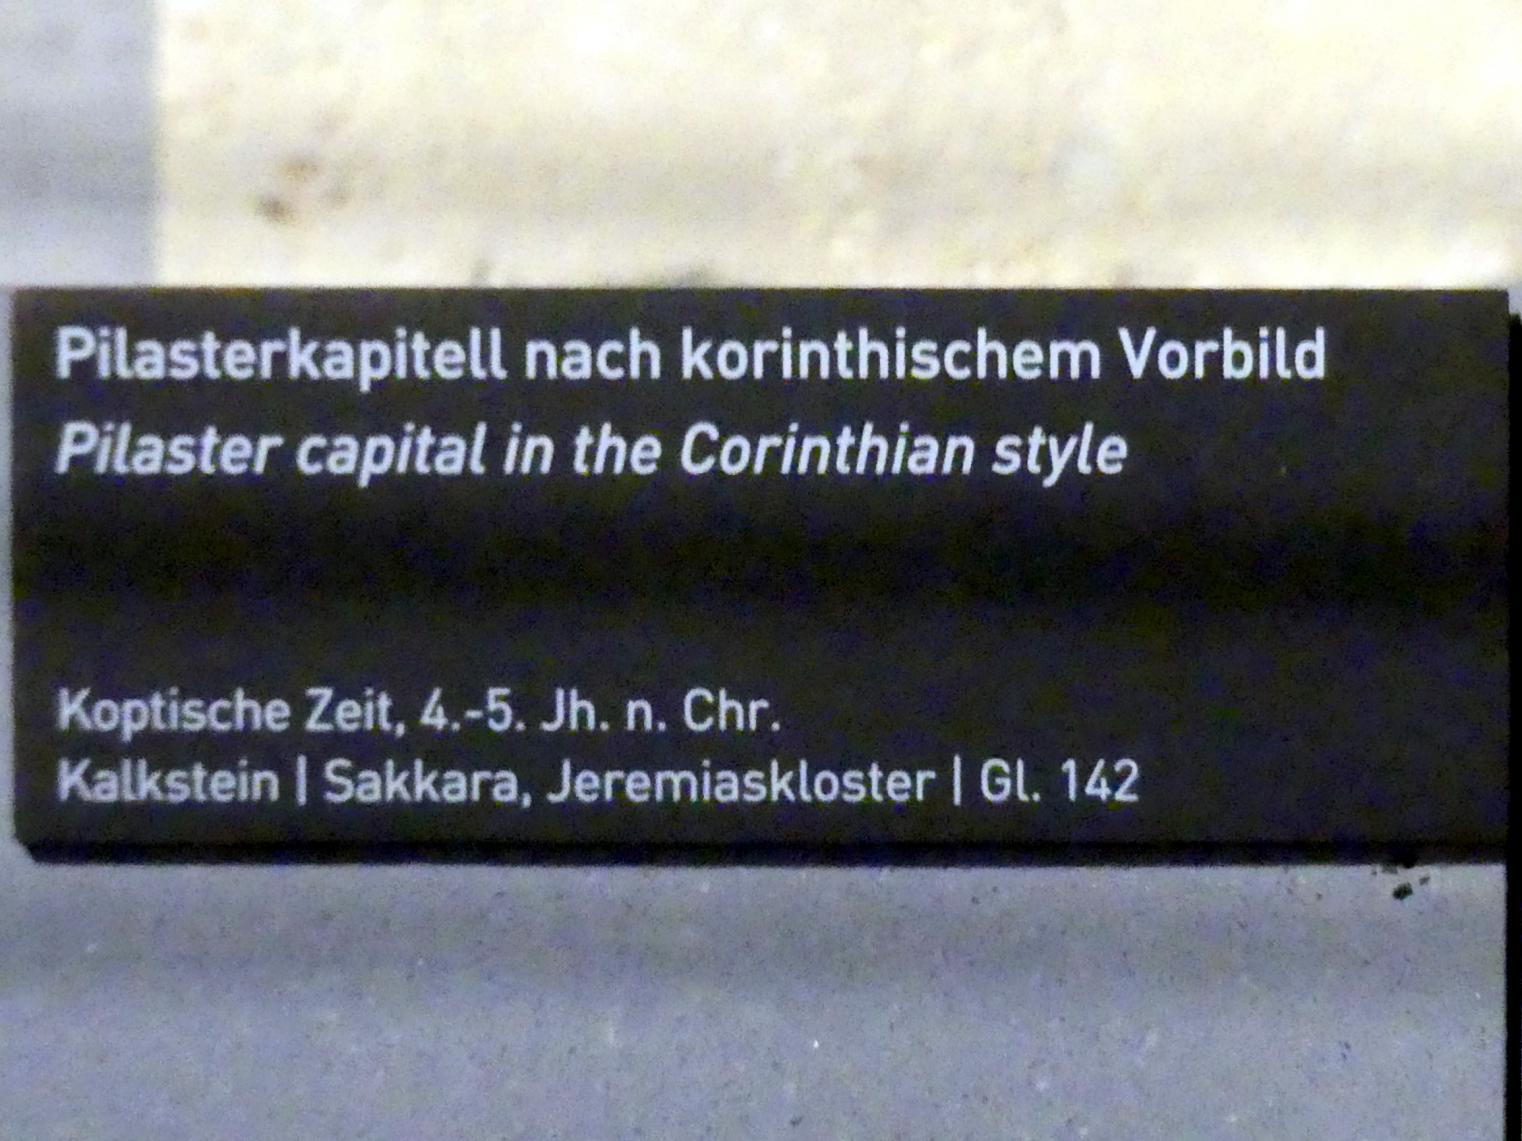 Pilasterkapitell nach korinthischem Vorbild, Koptische Zeit, 200 - 800, 300 - 500, Bild 2/2